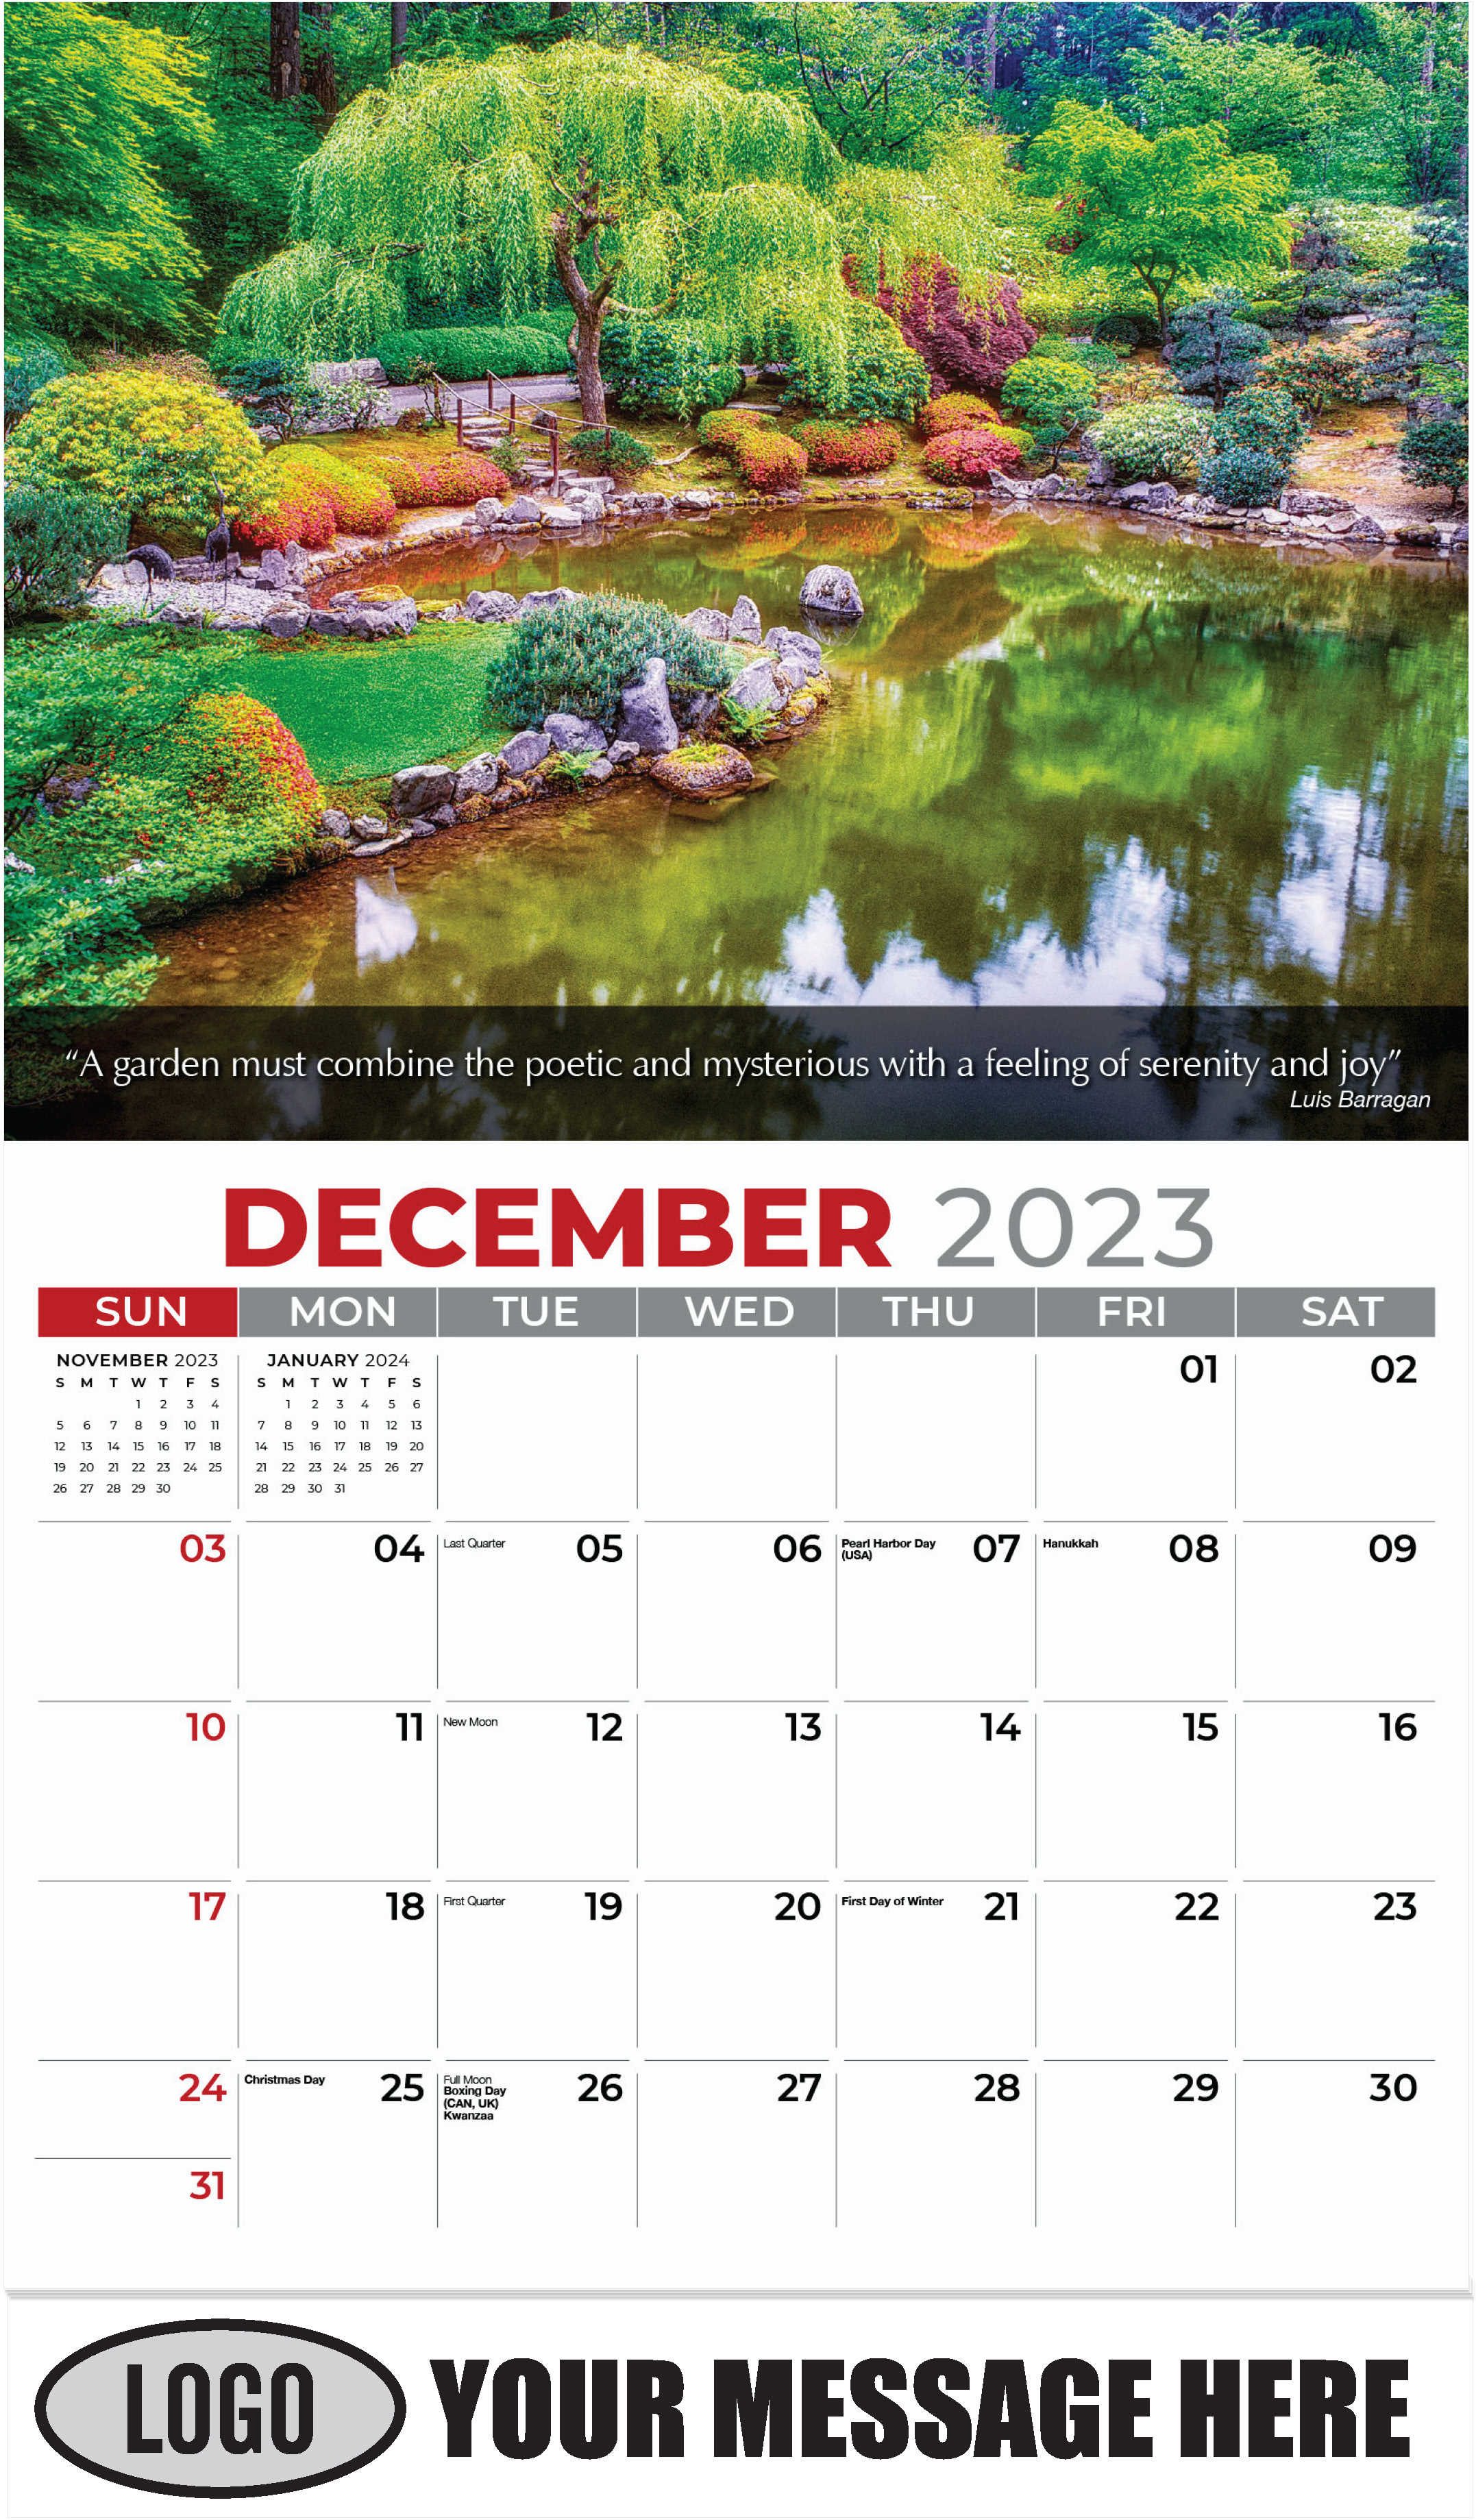 Blooming Azaleas Garden - December 2023 - Flowers & Gardens 2023 Promotional Calendar